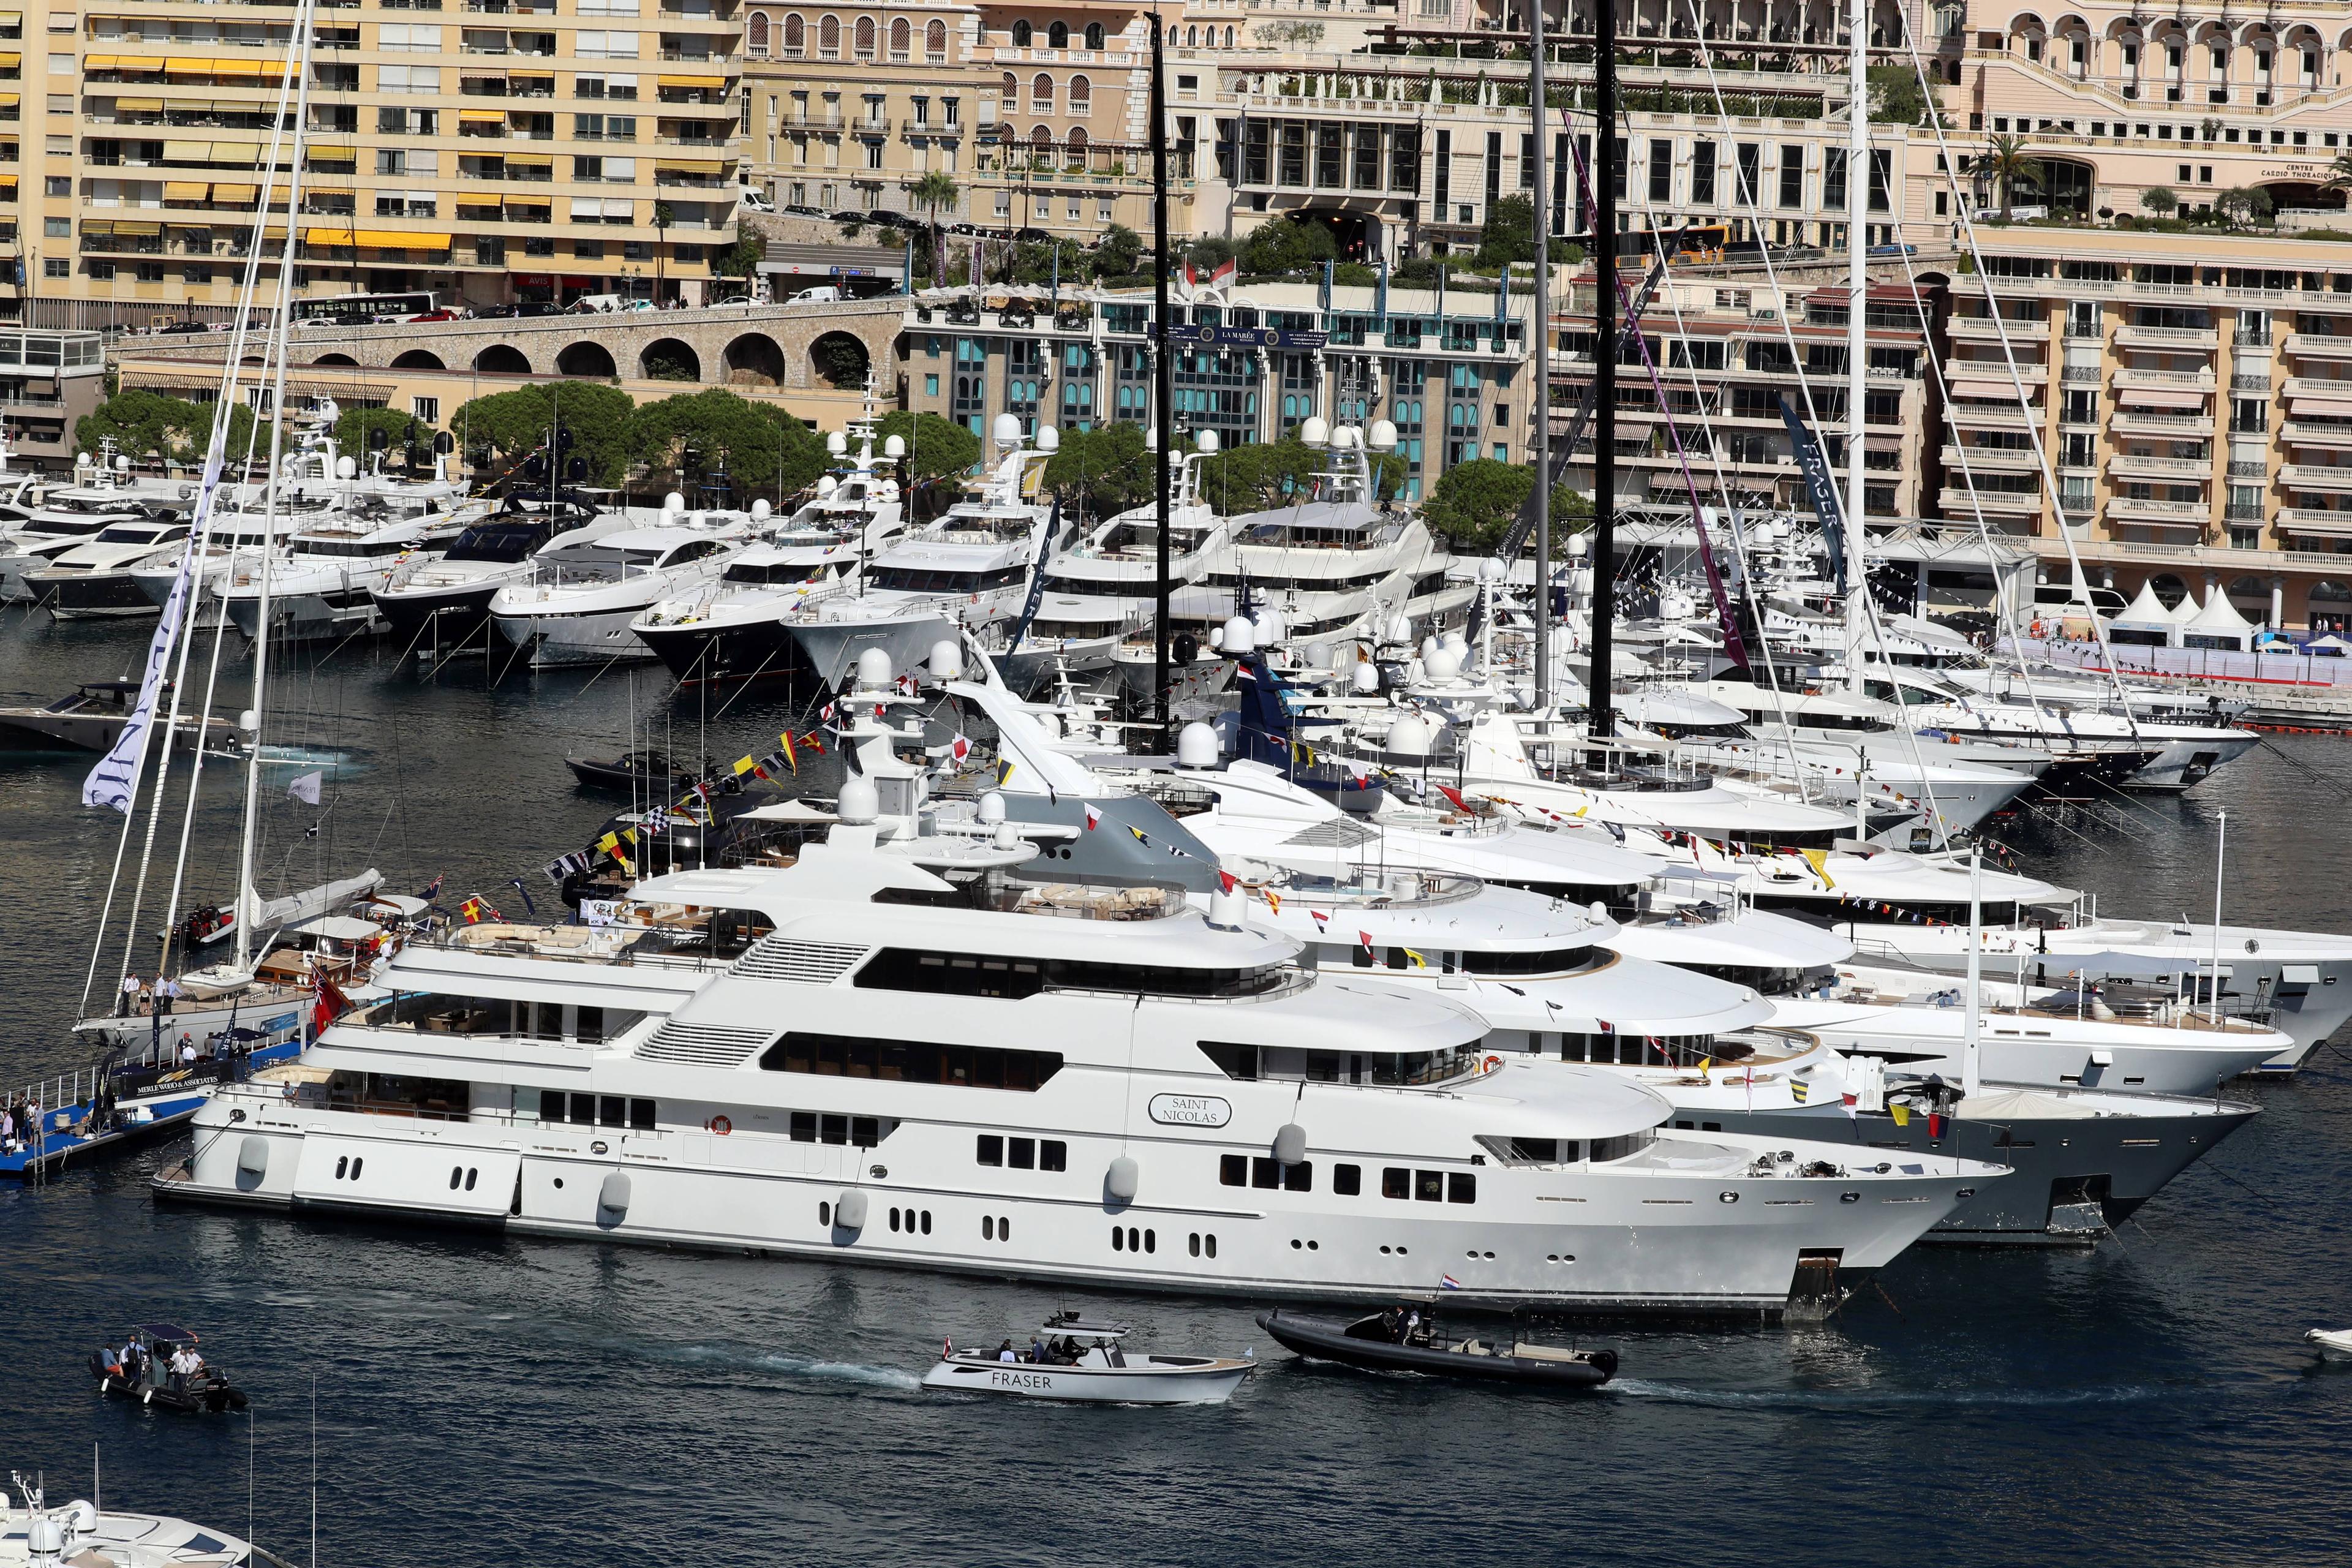 Monako je ovih dana domaćin sajma jahti vrijednih 3,5 milijardi eura